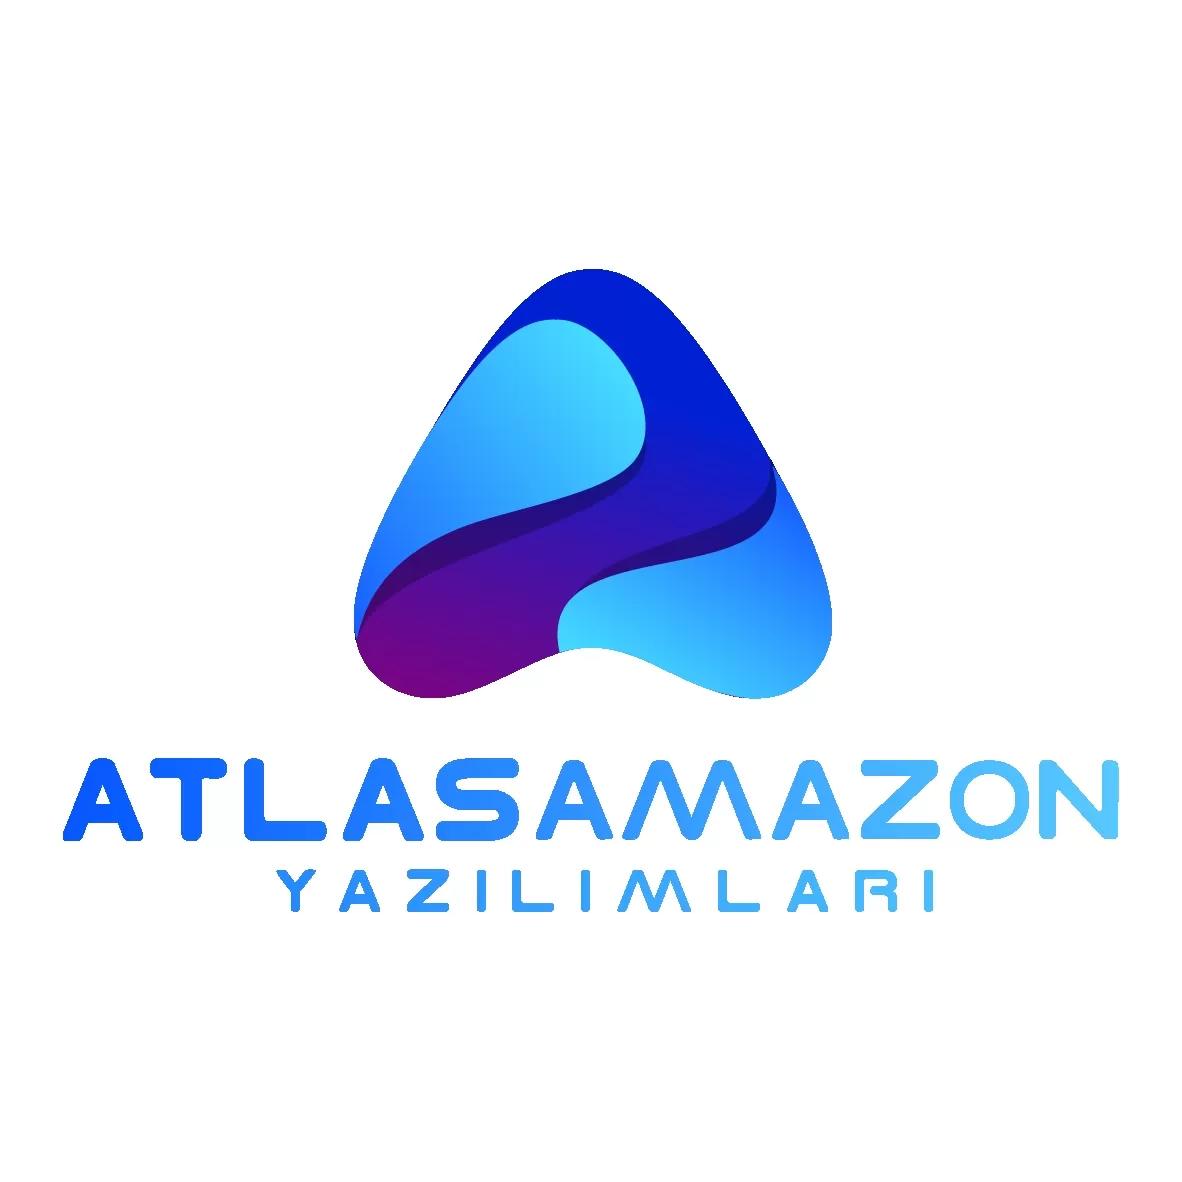 AtlasAmazonYazılımları - Amazon Ürün Bulma Yazılımları Nedir? 